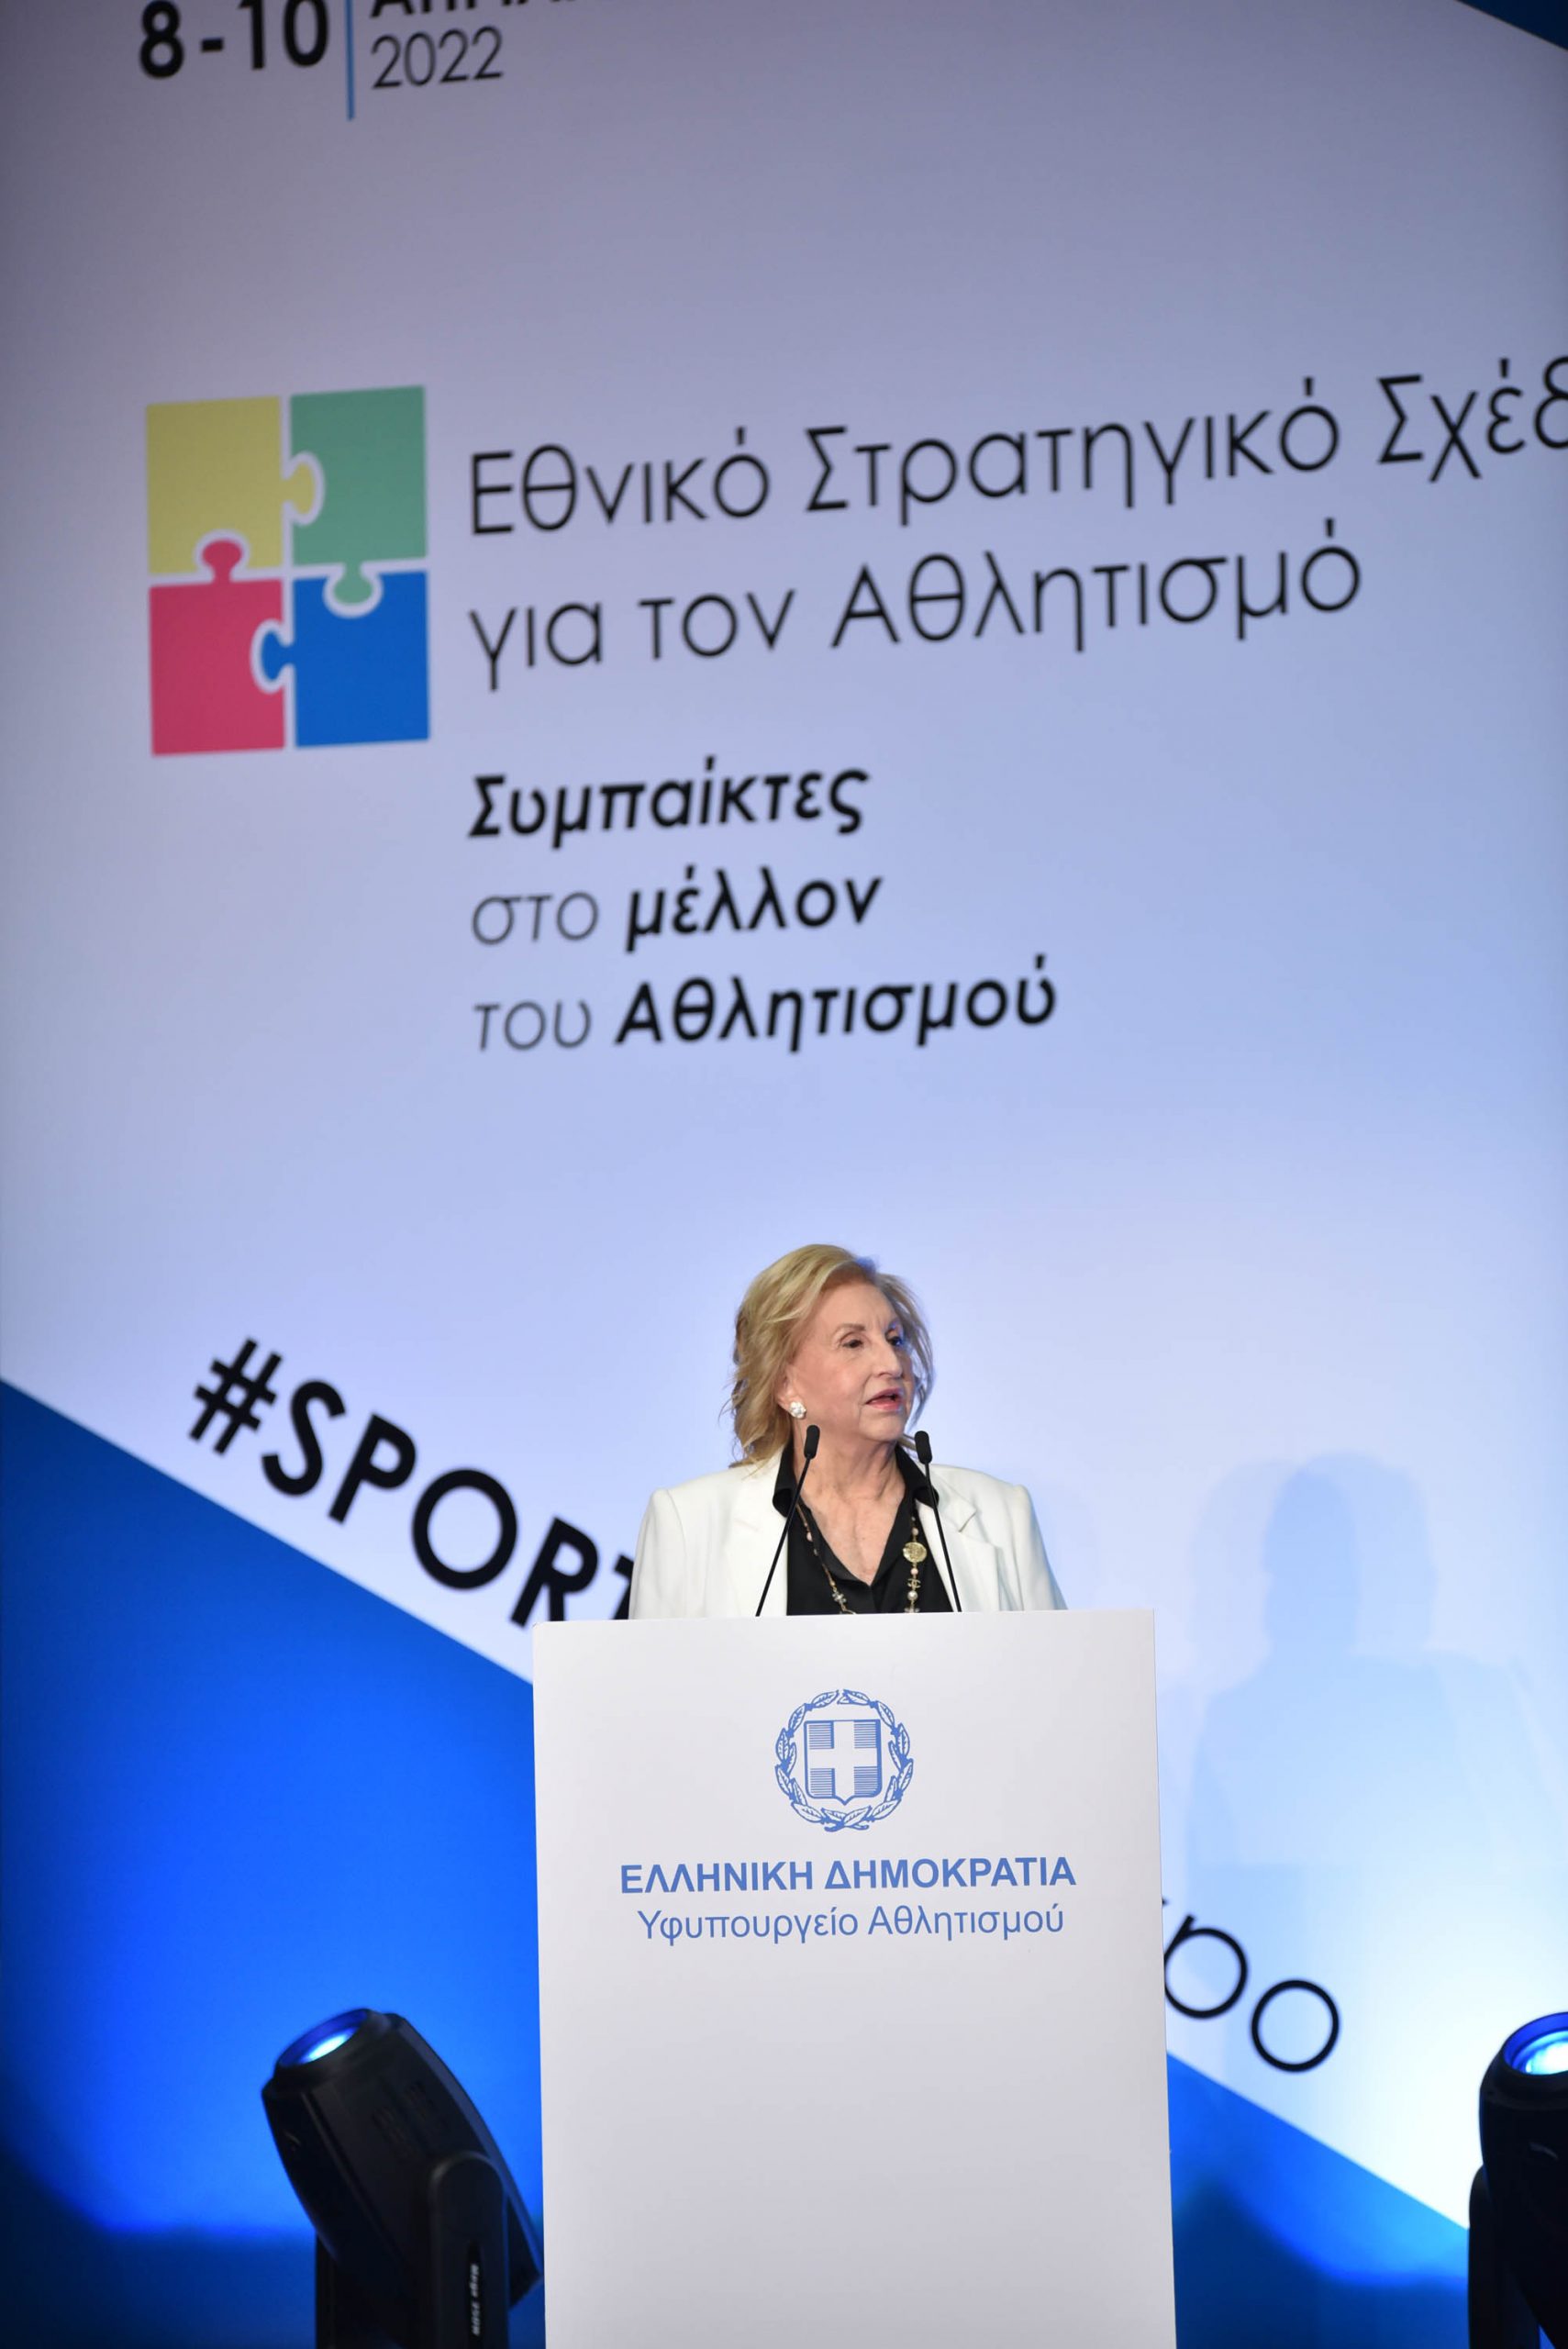 Συνέδριο για το Εθνικό Στρατηγικό Σχέδιο για τον Αθλητισμό – Έργα και δράσεις που αλλάζουν το «τοπίο» στη Δυτ. Ελλάδα